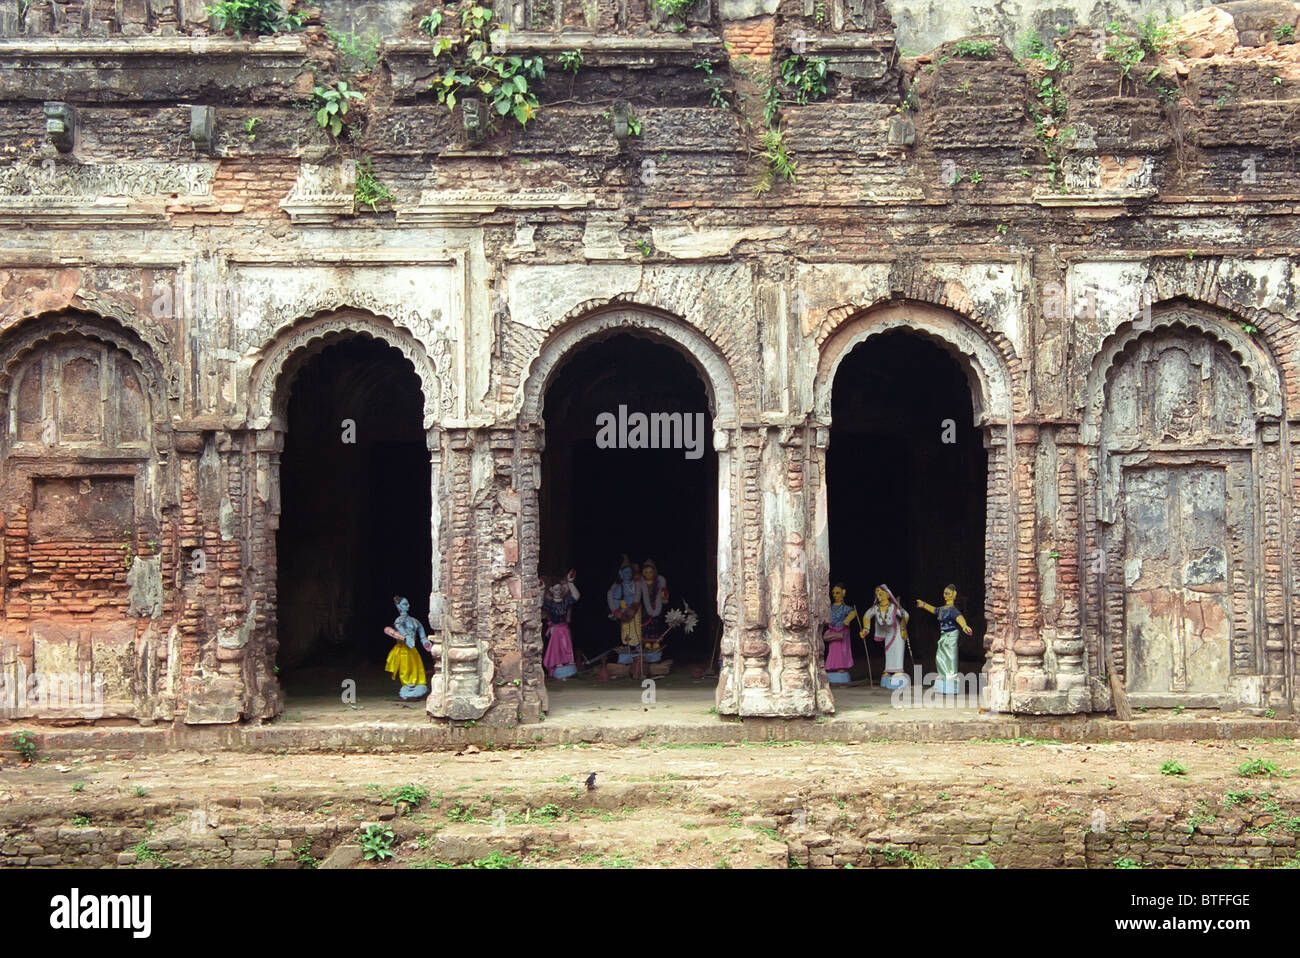 Ancien Temple pourri avec les figures de dieux hindous dans une zone rurale du Bangladesh. Banque D'Images